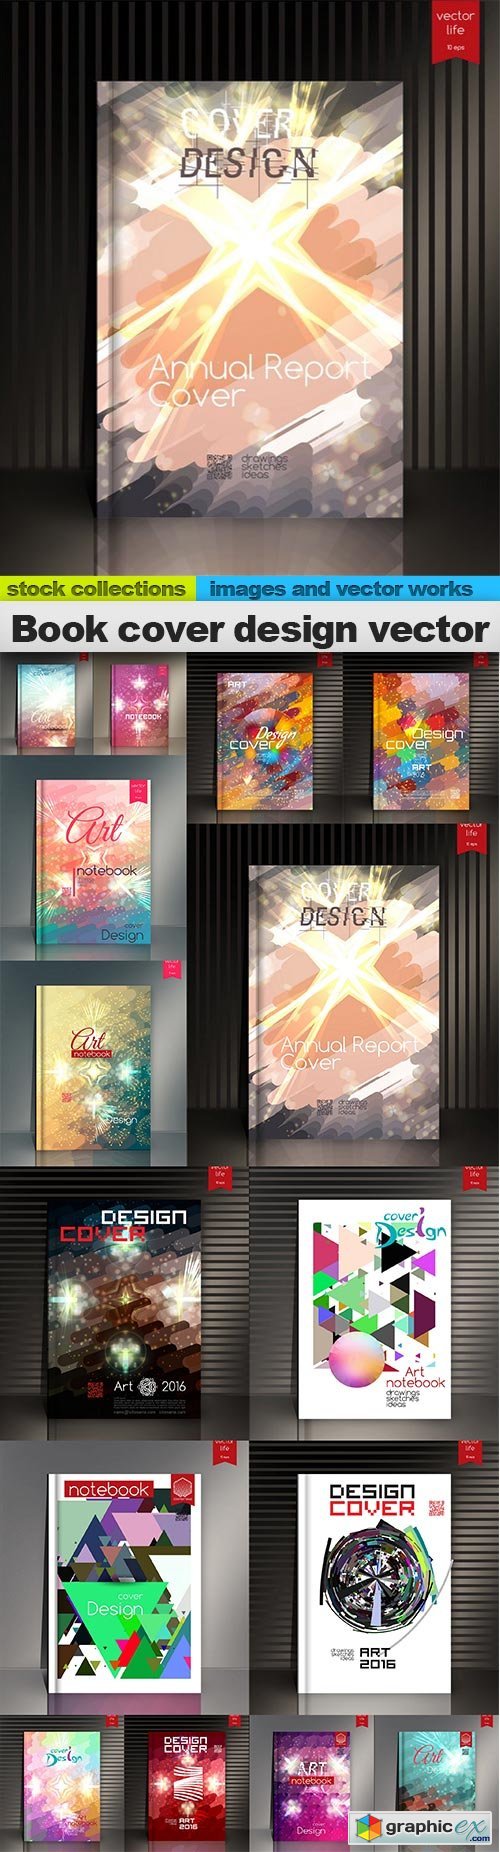 Book cover design vector, 15 x EPS